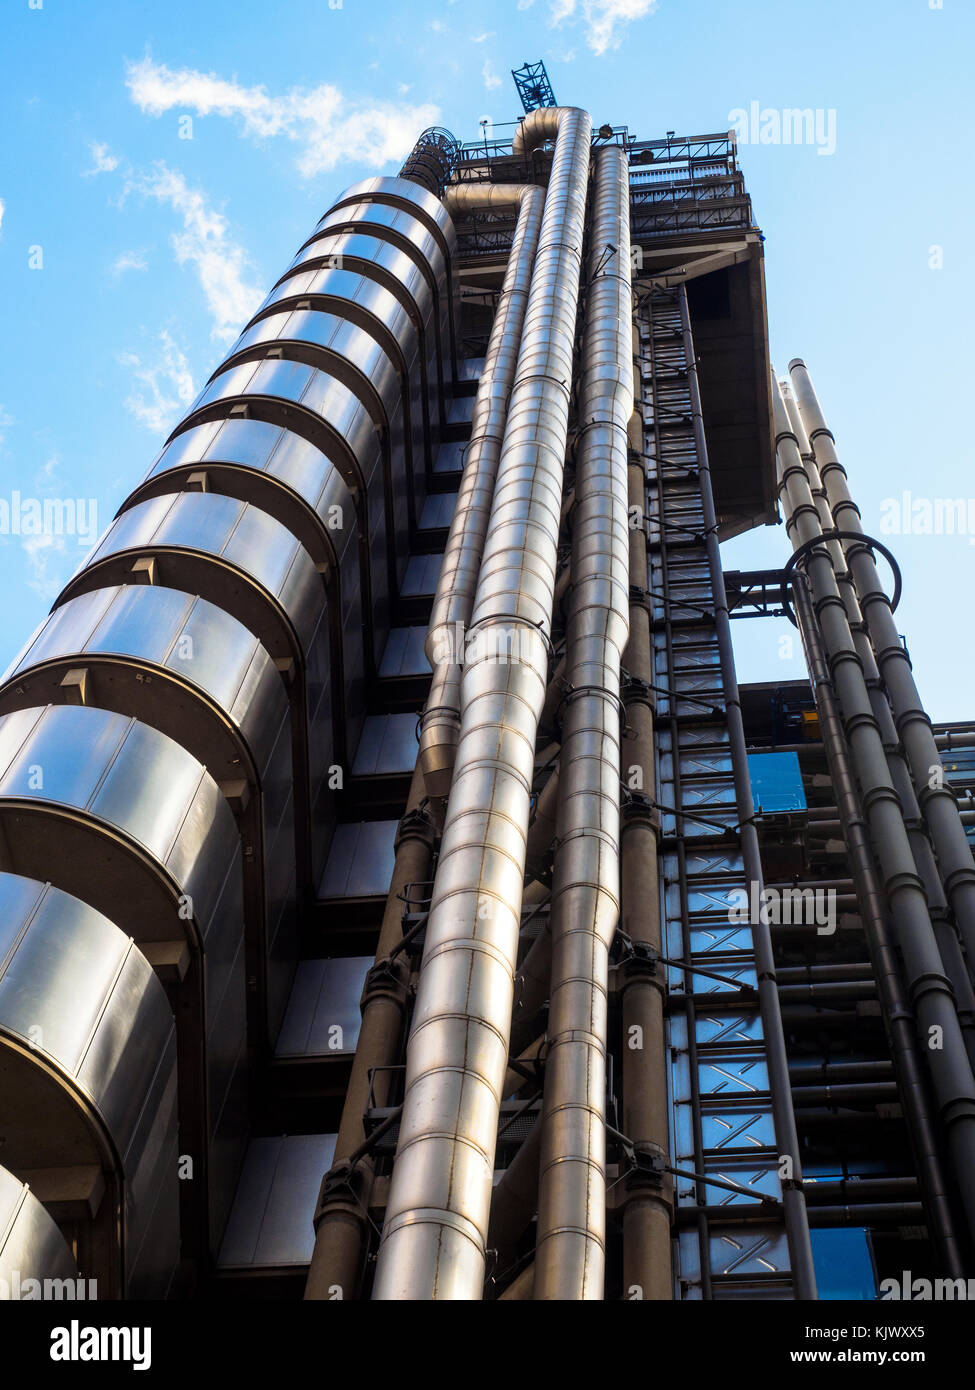 Détail architectural de la Lloyds of London - Londres, Angleterre Banque D'Images